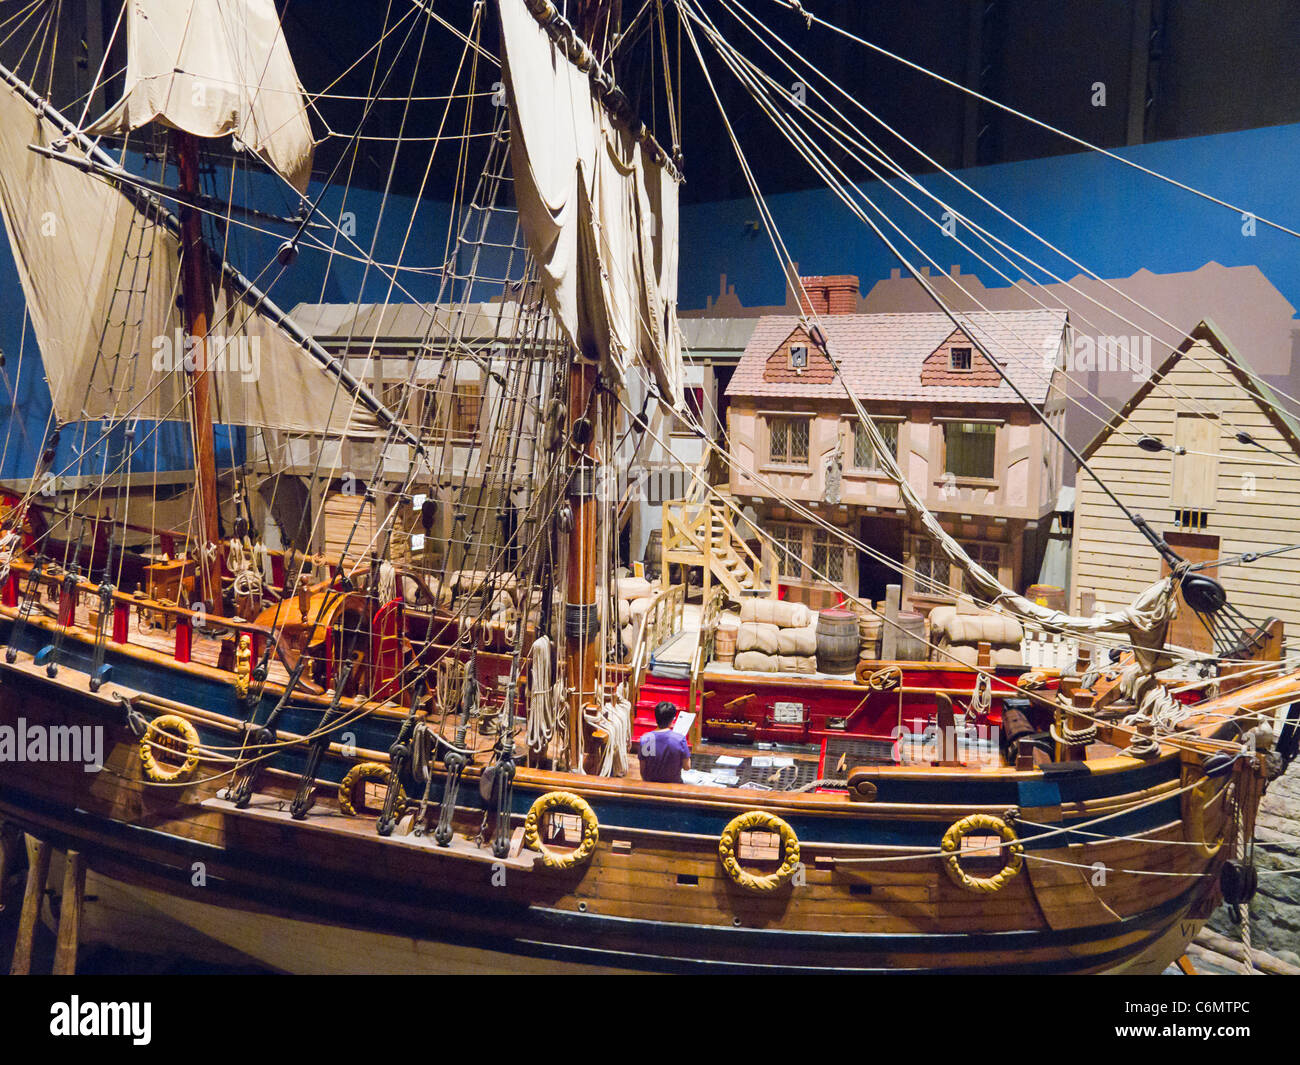 La replica della Nonsuch, che ha navigato nella Baia di Hudson in 1668-1669 nel viaggio di trading per quello che è diventato il Hudson's Bay Co. Foto Stock